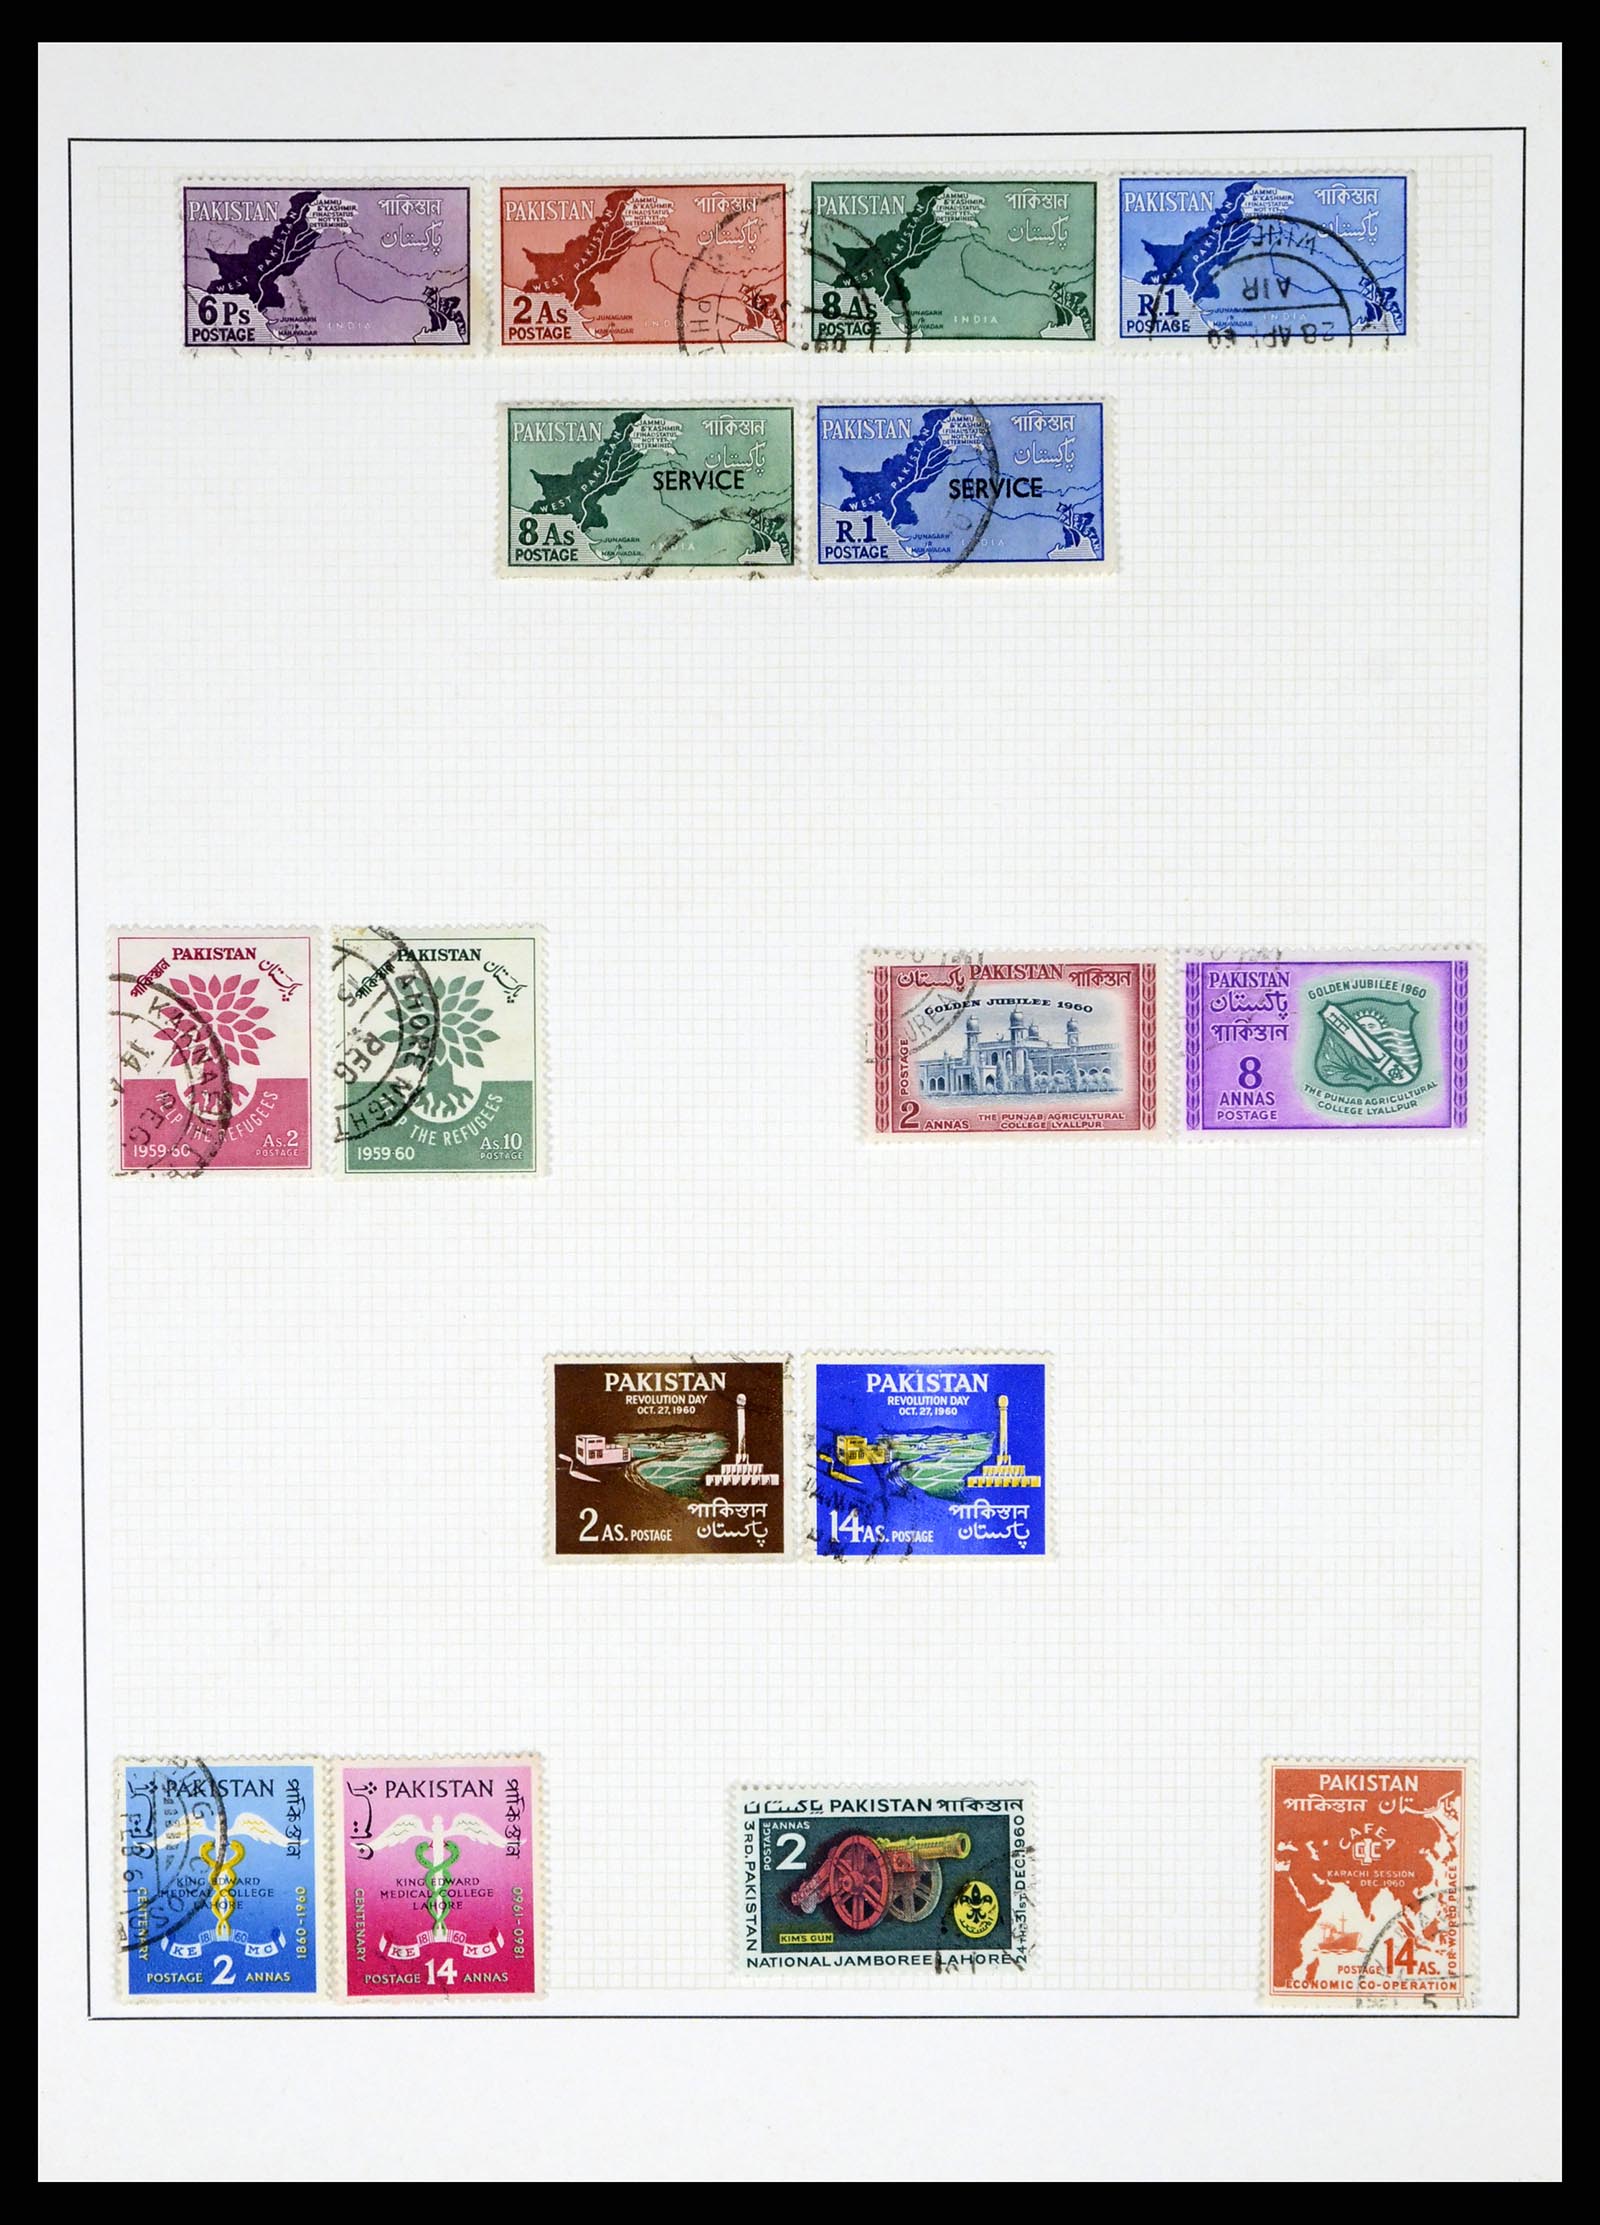 37619 013 - Stamp collection 37619 Pakistan/Bangladesh 1947-2000.